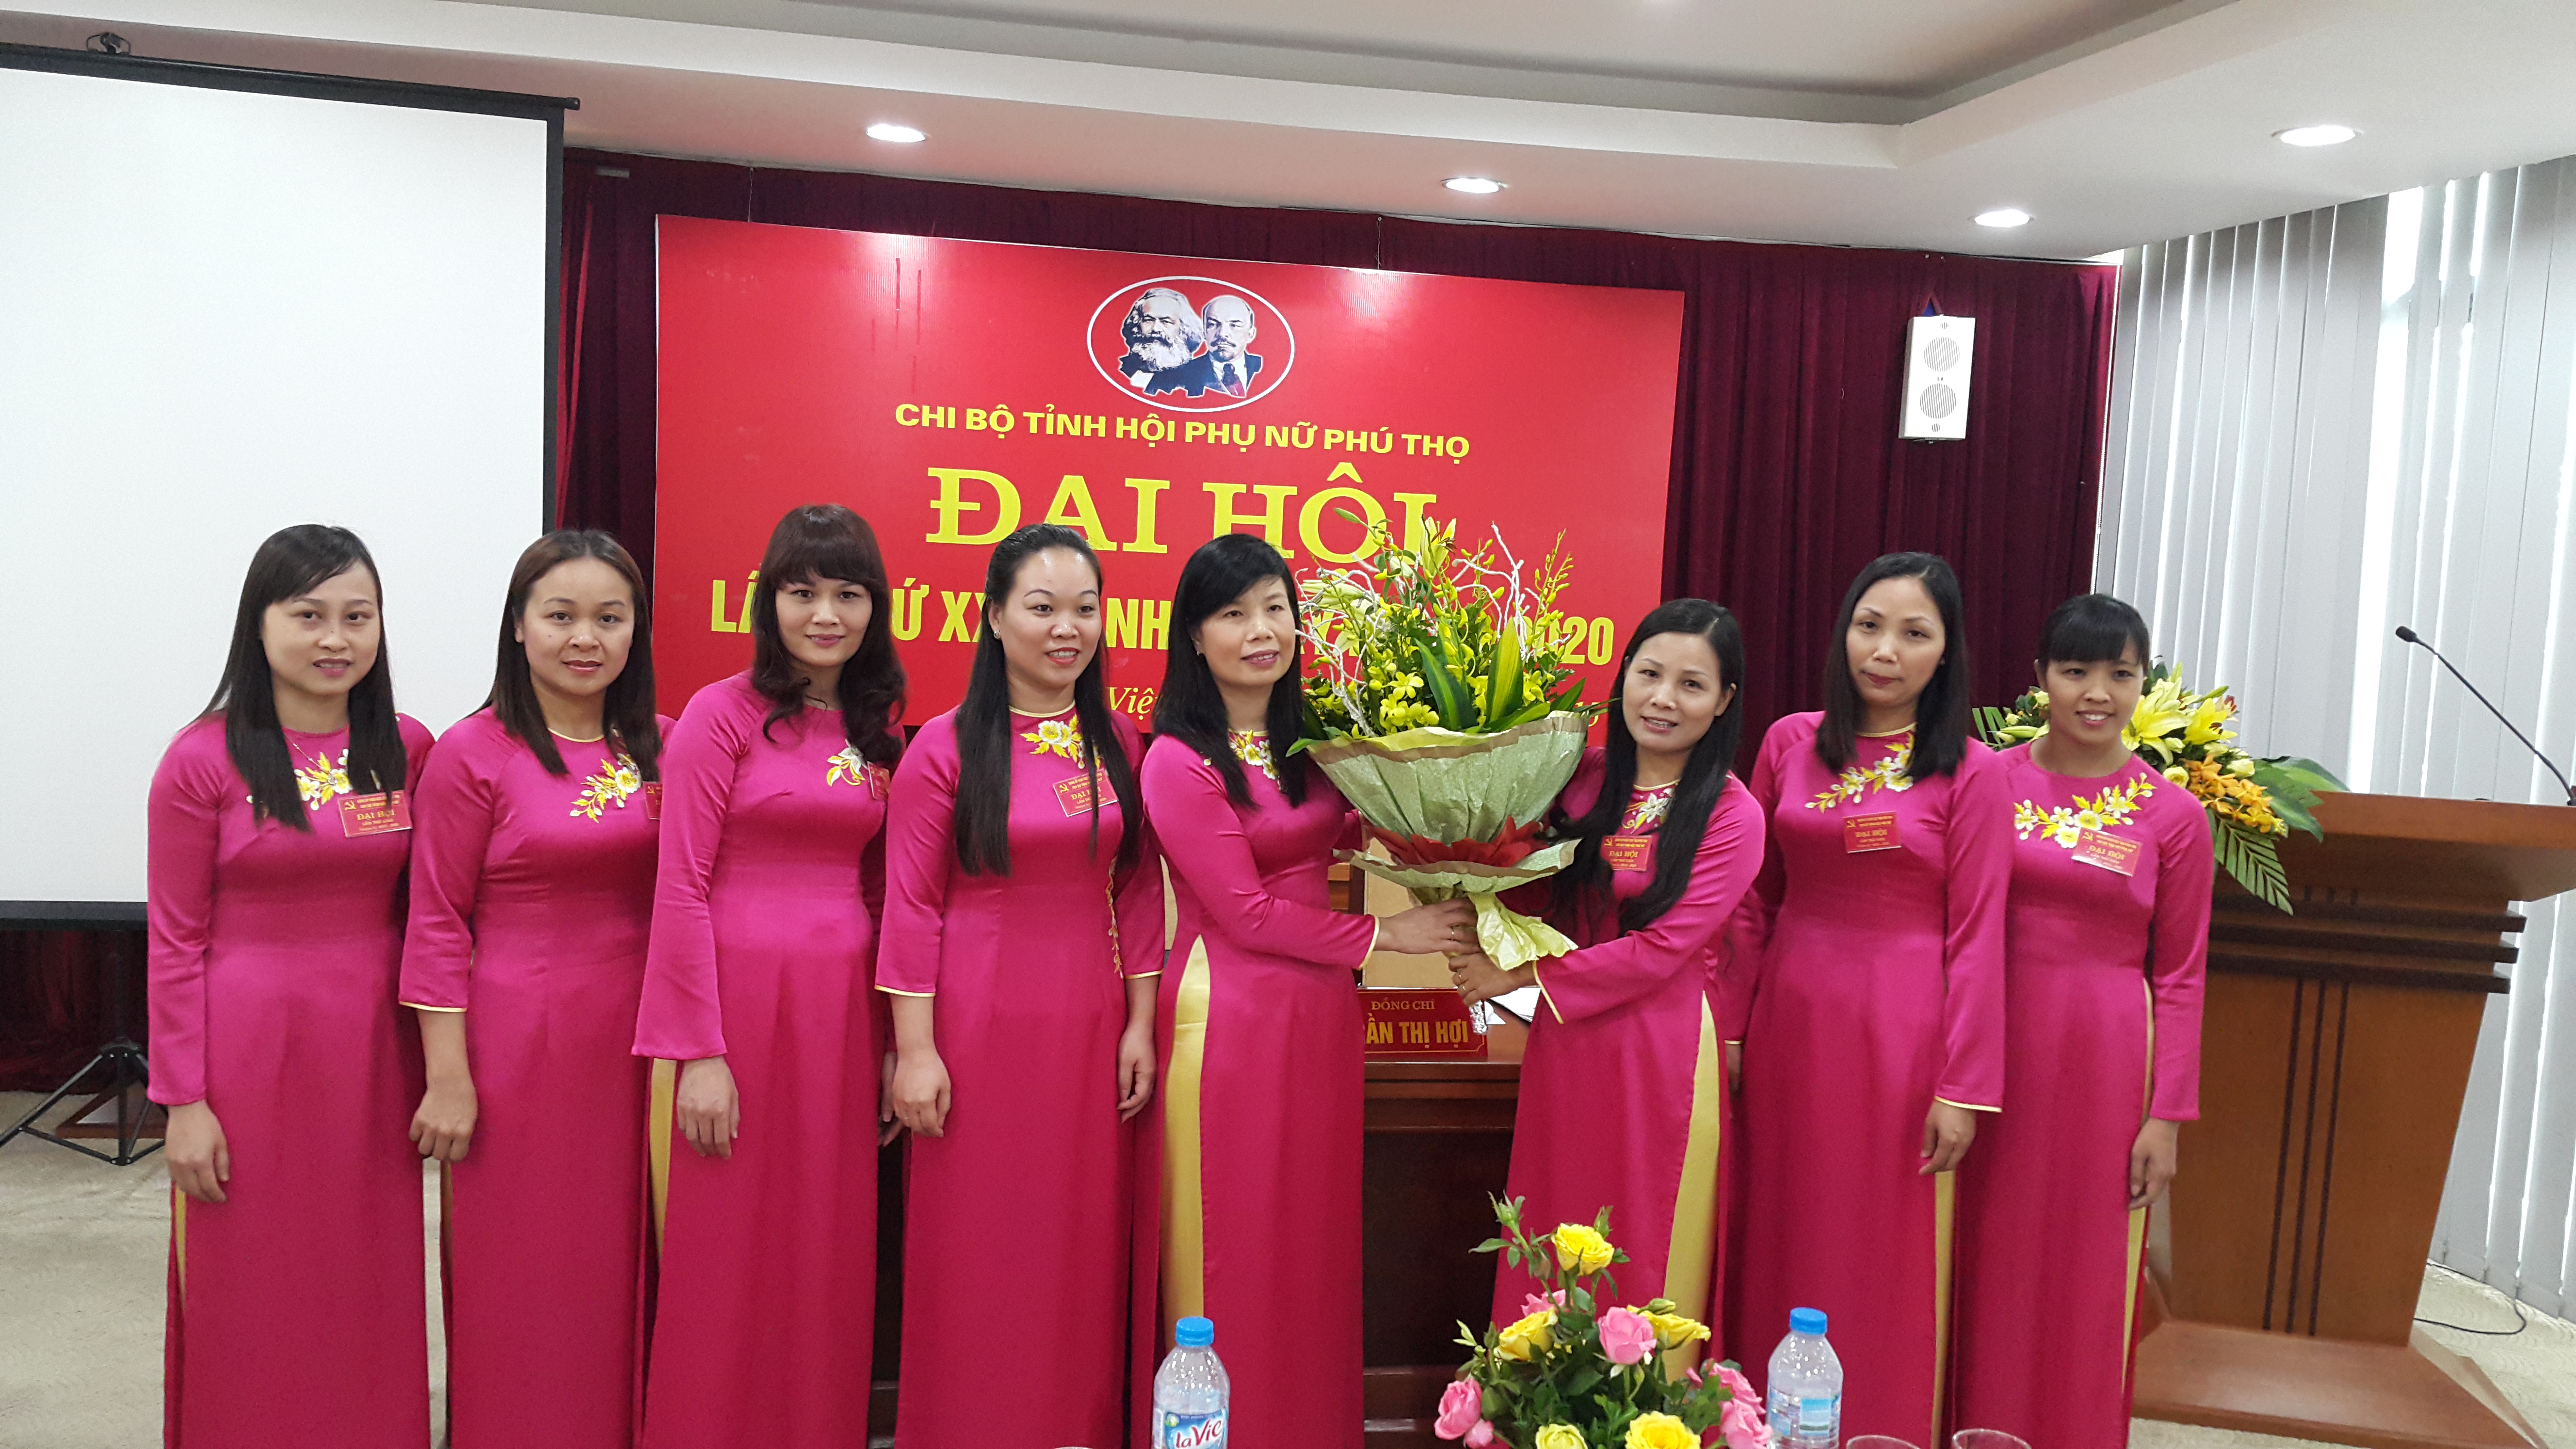 Chùm ảnh Đại hội chi bộ Tỉnh hội phụ nữ Phú Thọ lần thứ XXIII nhiệm kỳ 2015 - 2020